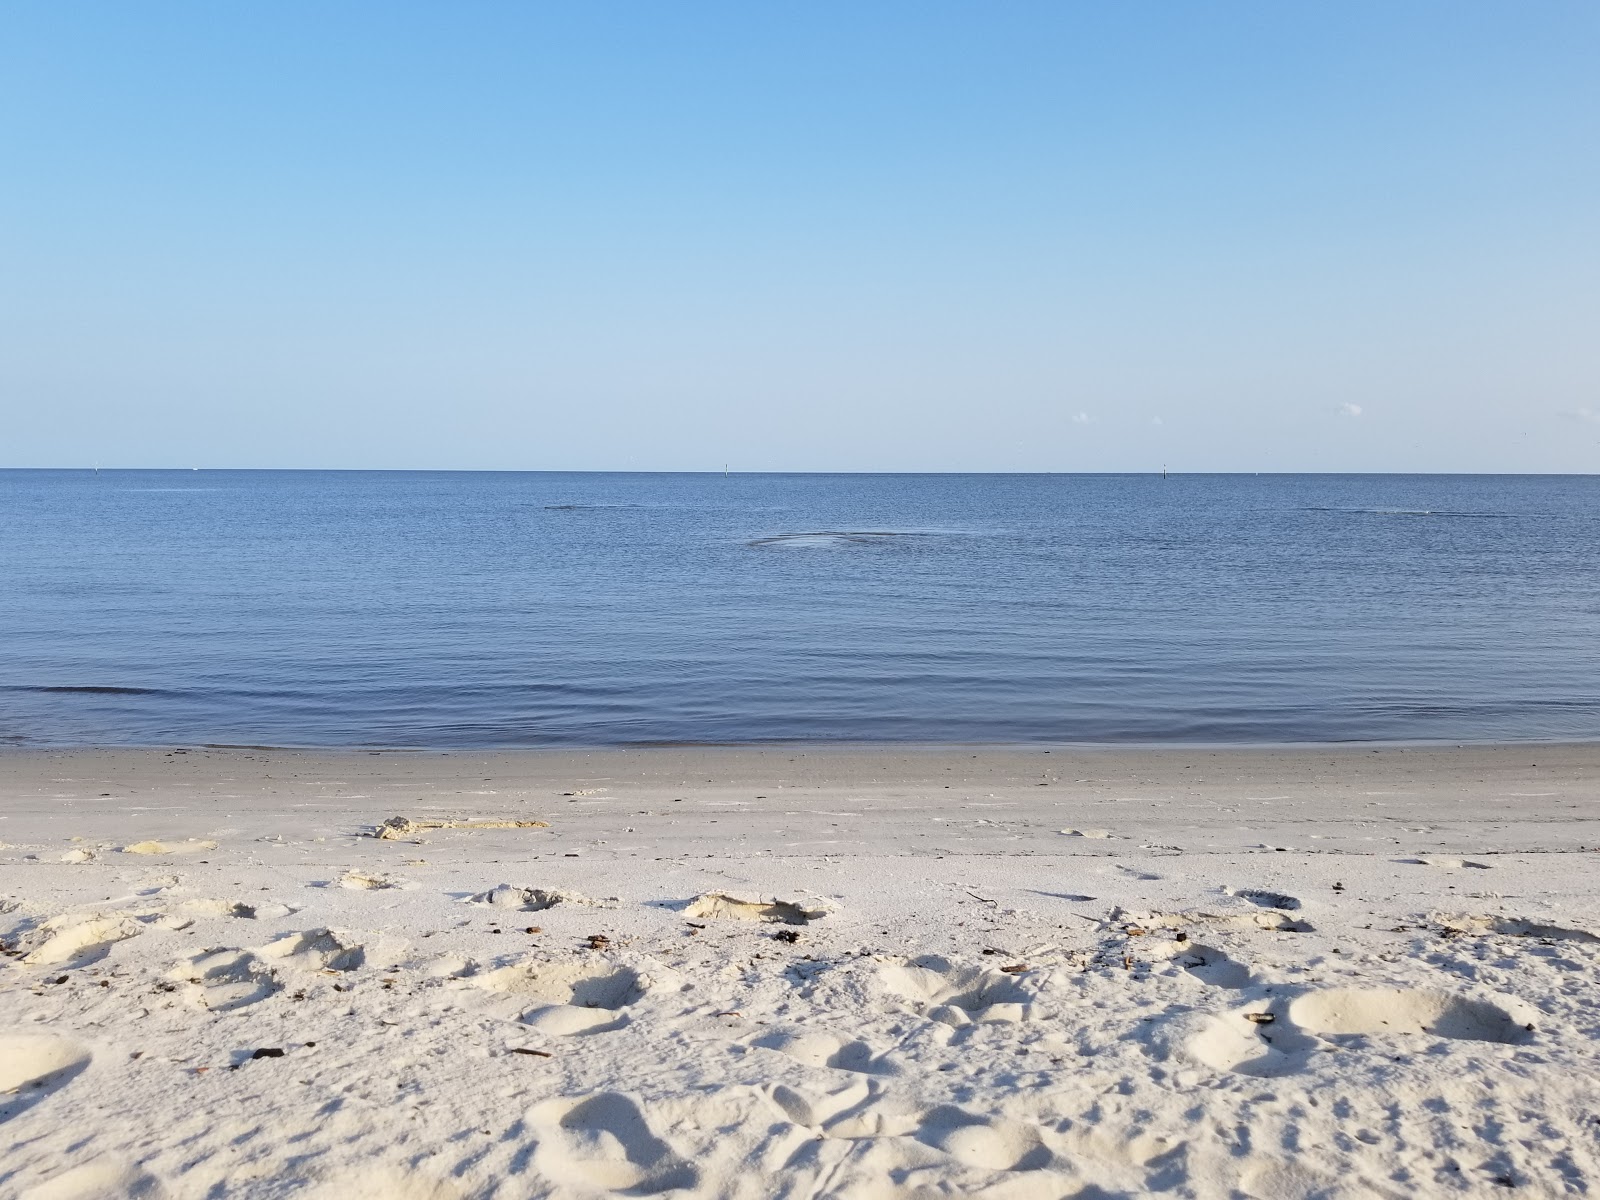 Mississippi City beach的照片 具有部分干净级别的清洁度